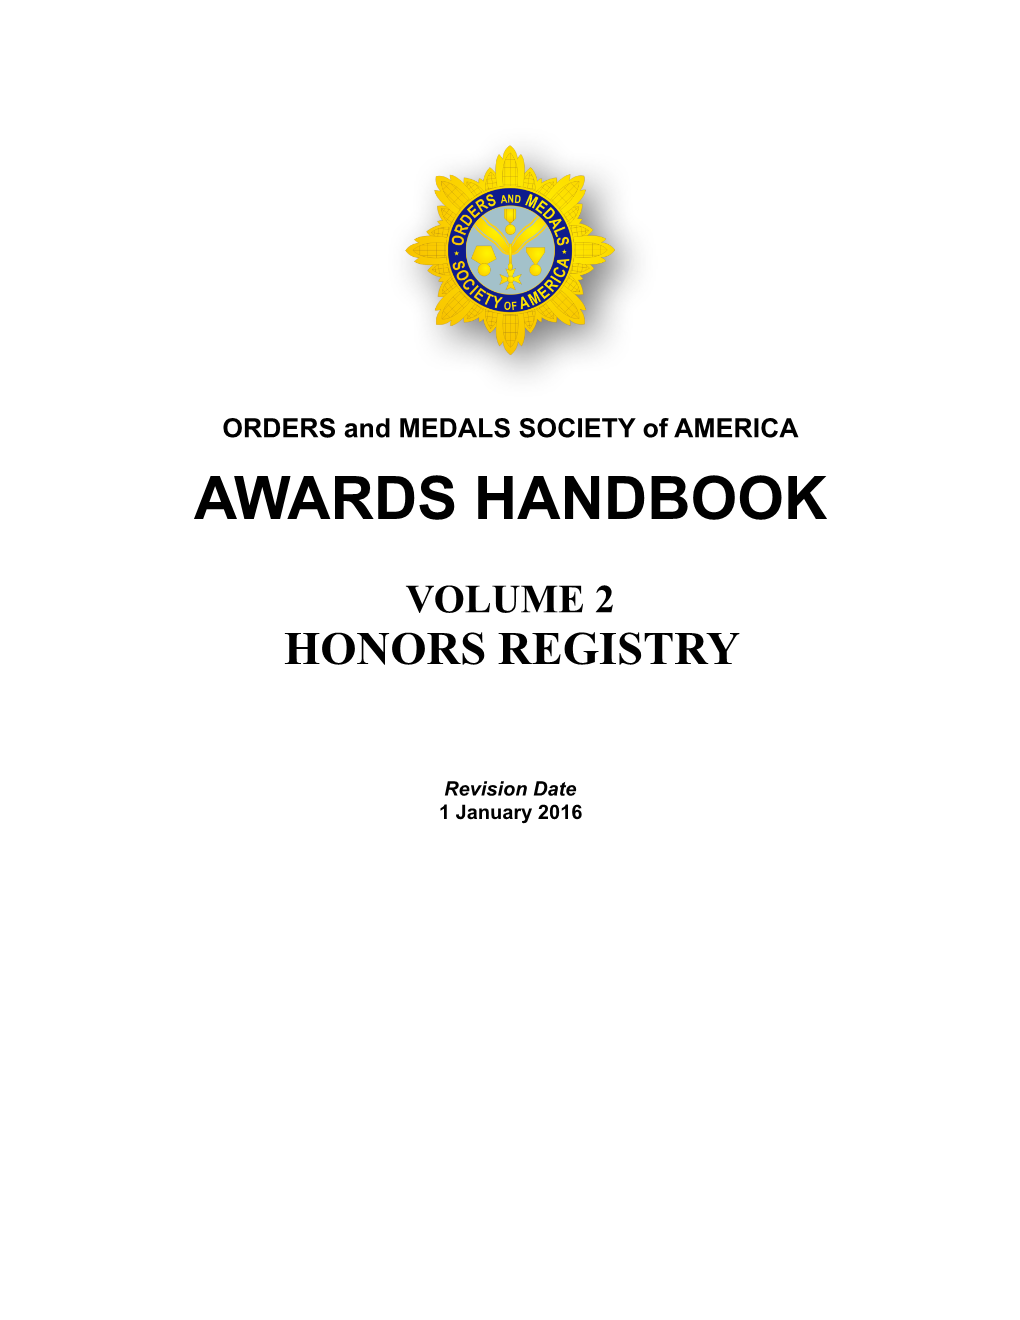 Awards Handbook